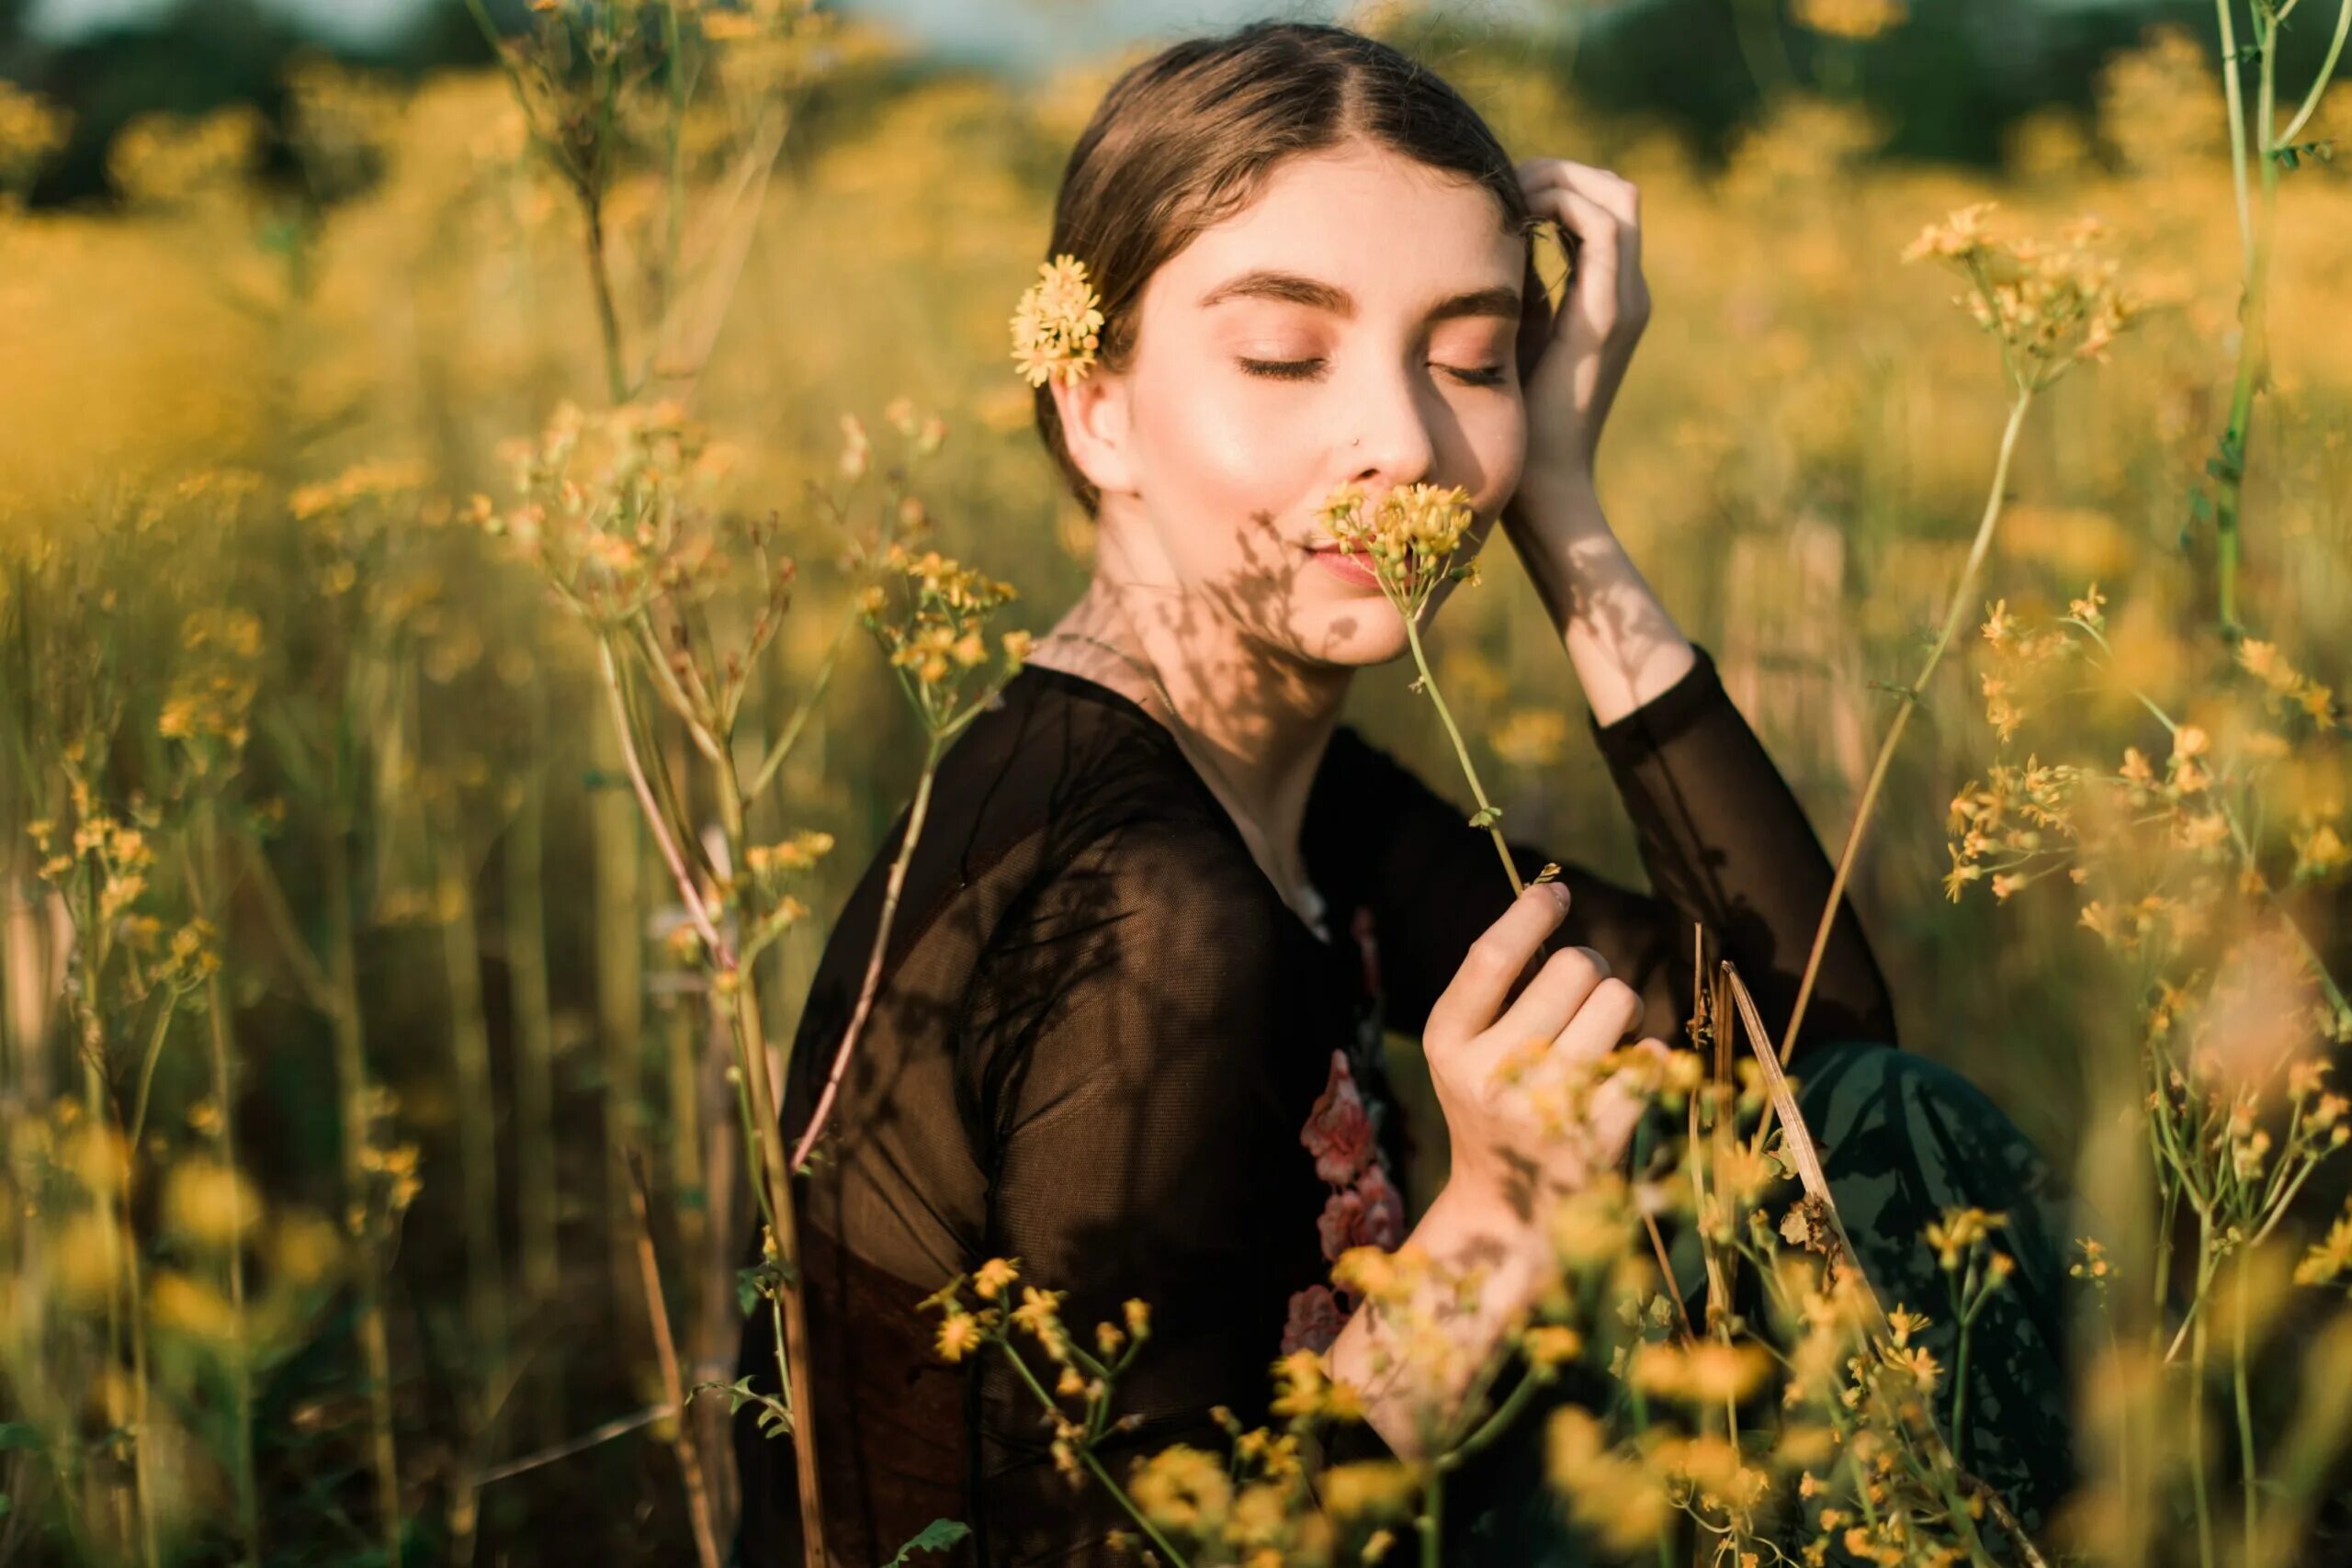 Обоняние женщины. Девушка нюхает цветы. Запах человека. Вдыхать аромат. Фотографии людей на природе.